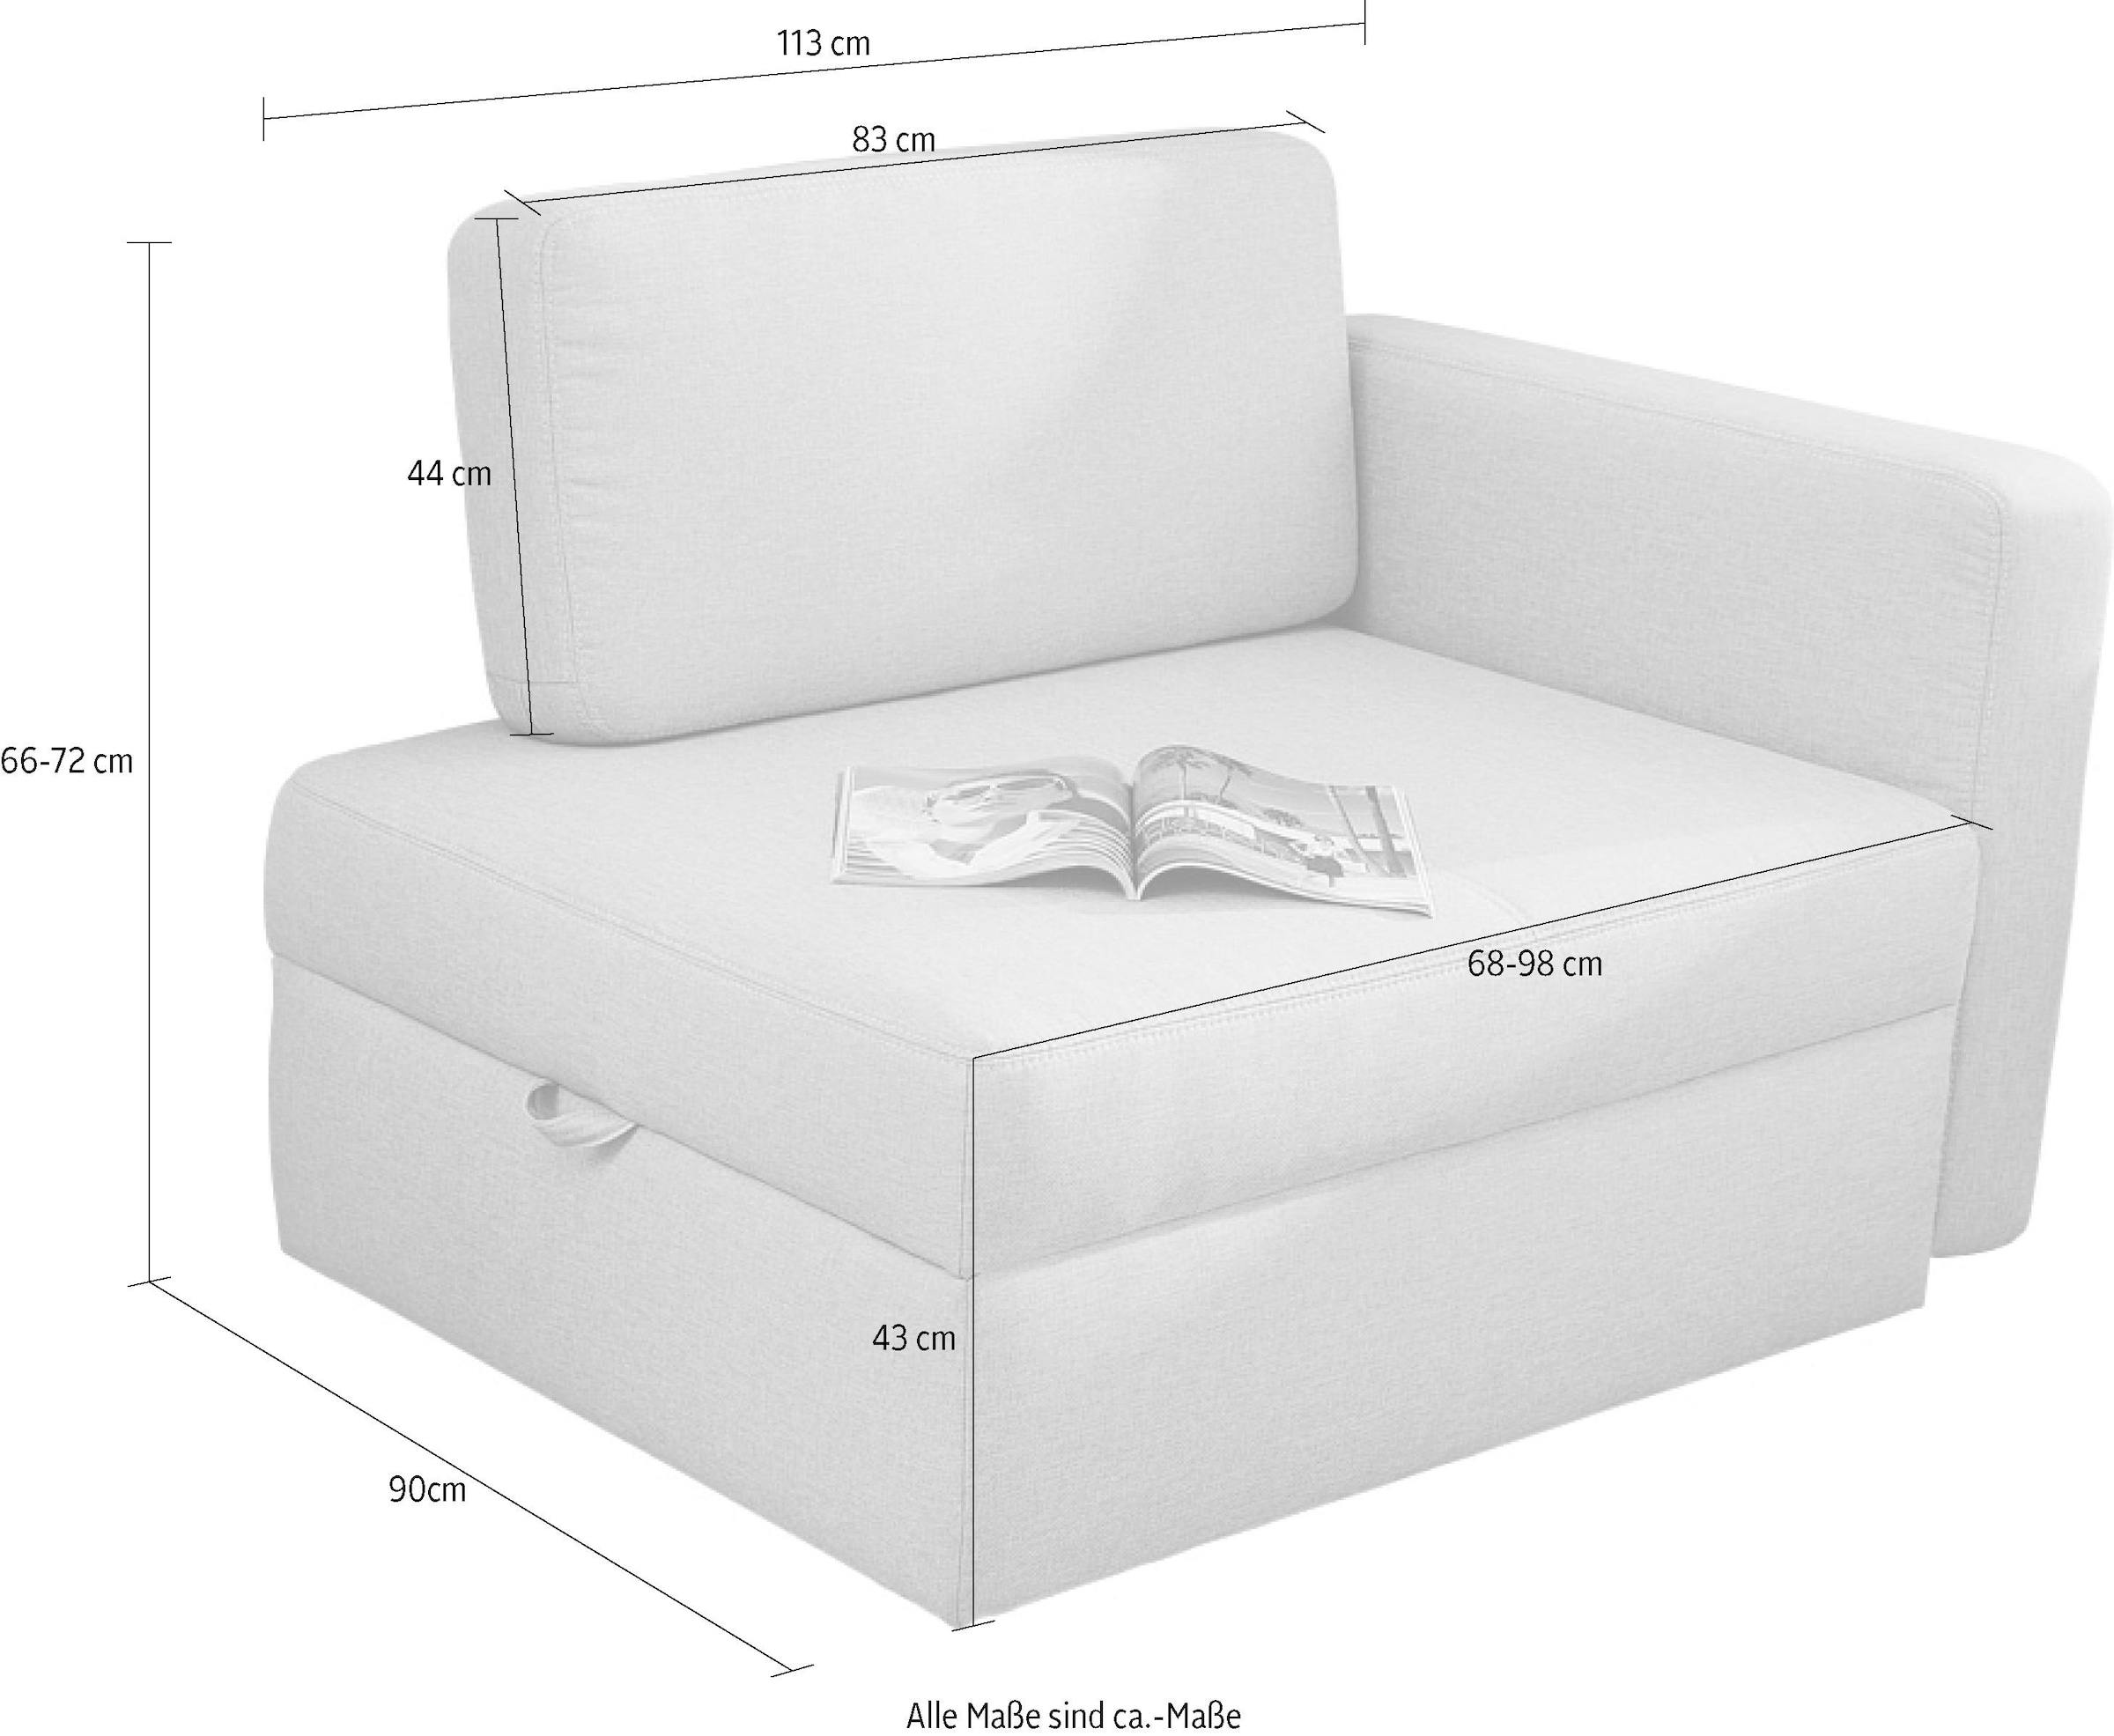 Jockenhöfer Gruppe Sessel »Youngster«, platzsparend, verwandelbar in ein  Gästebett, Liegefläche 84x201 cm günstig kaufen